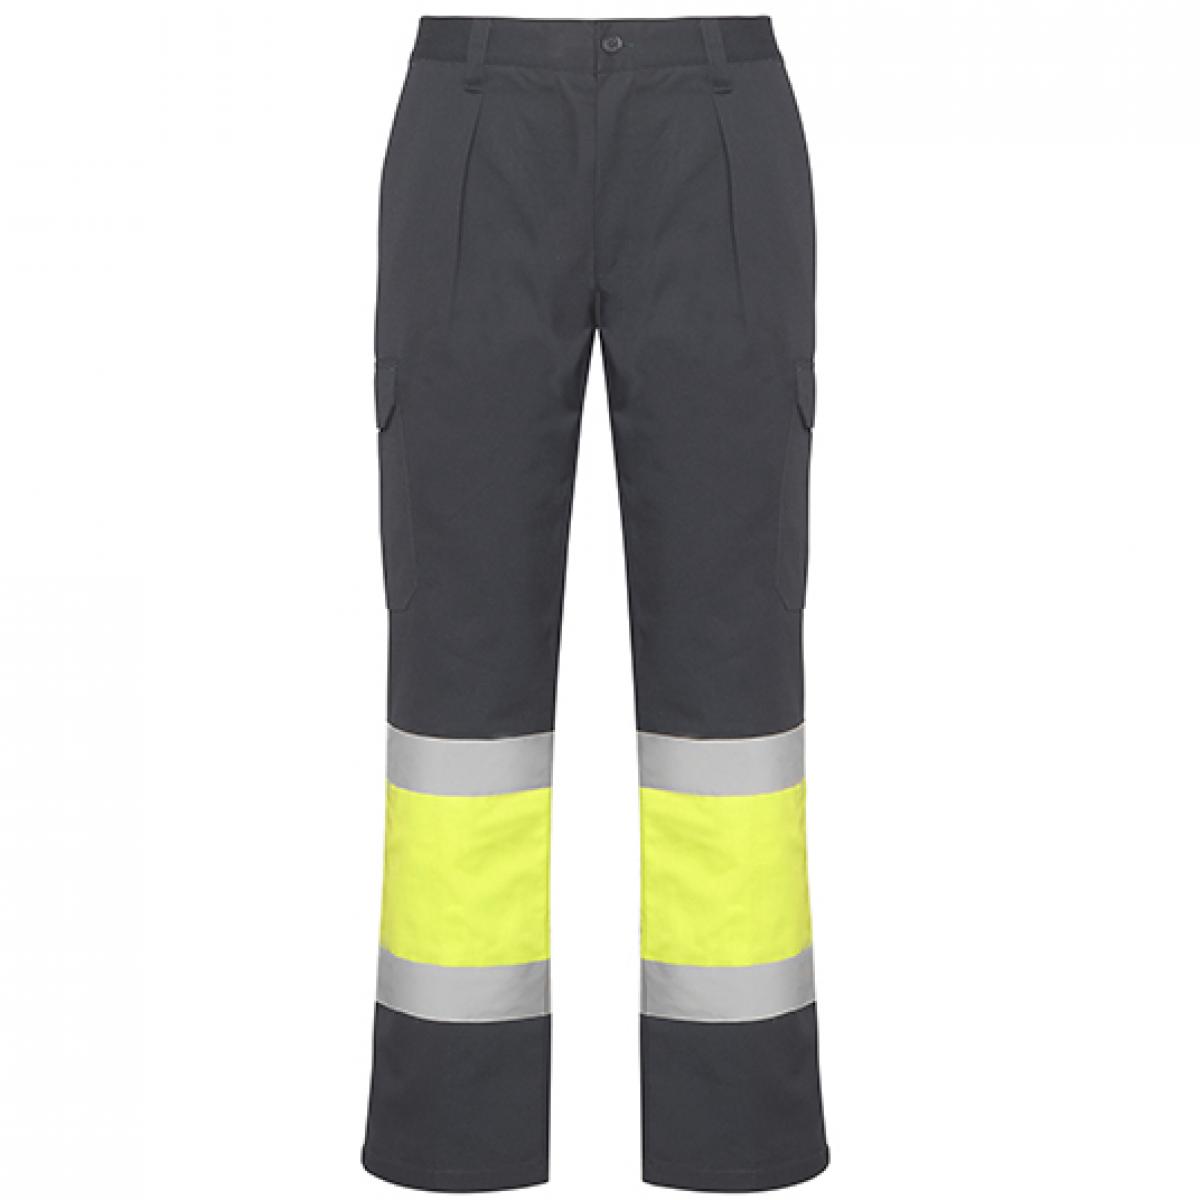 Hersteller: Roly Workwear Herstellernummer: HV9301 Artikelbezeichnung: Soan Hi-Viz Trousers - Arbeitshose mit Reflektionsstreifen Farbe: Lead 23/Fluor Yellow 221